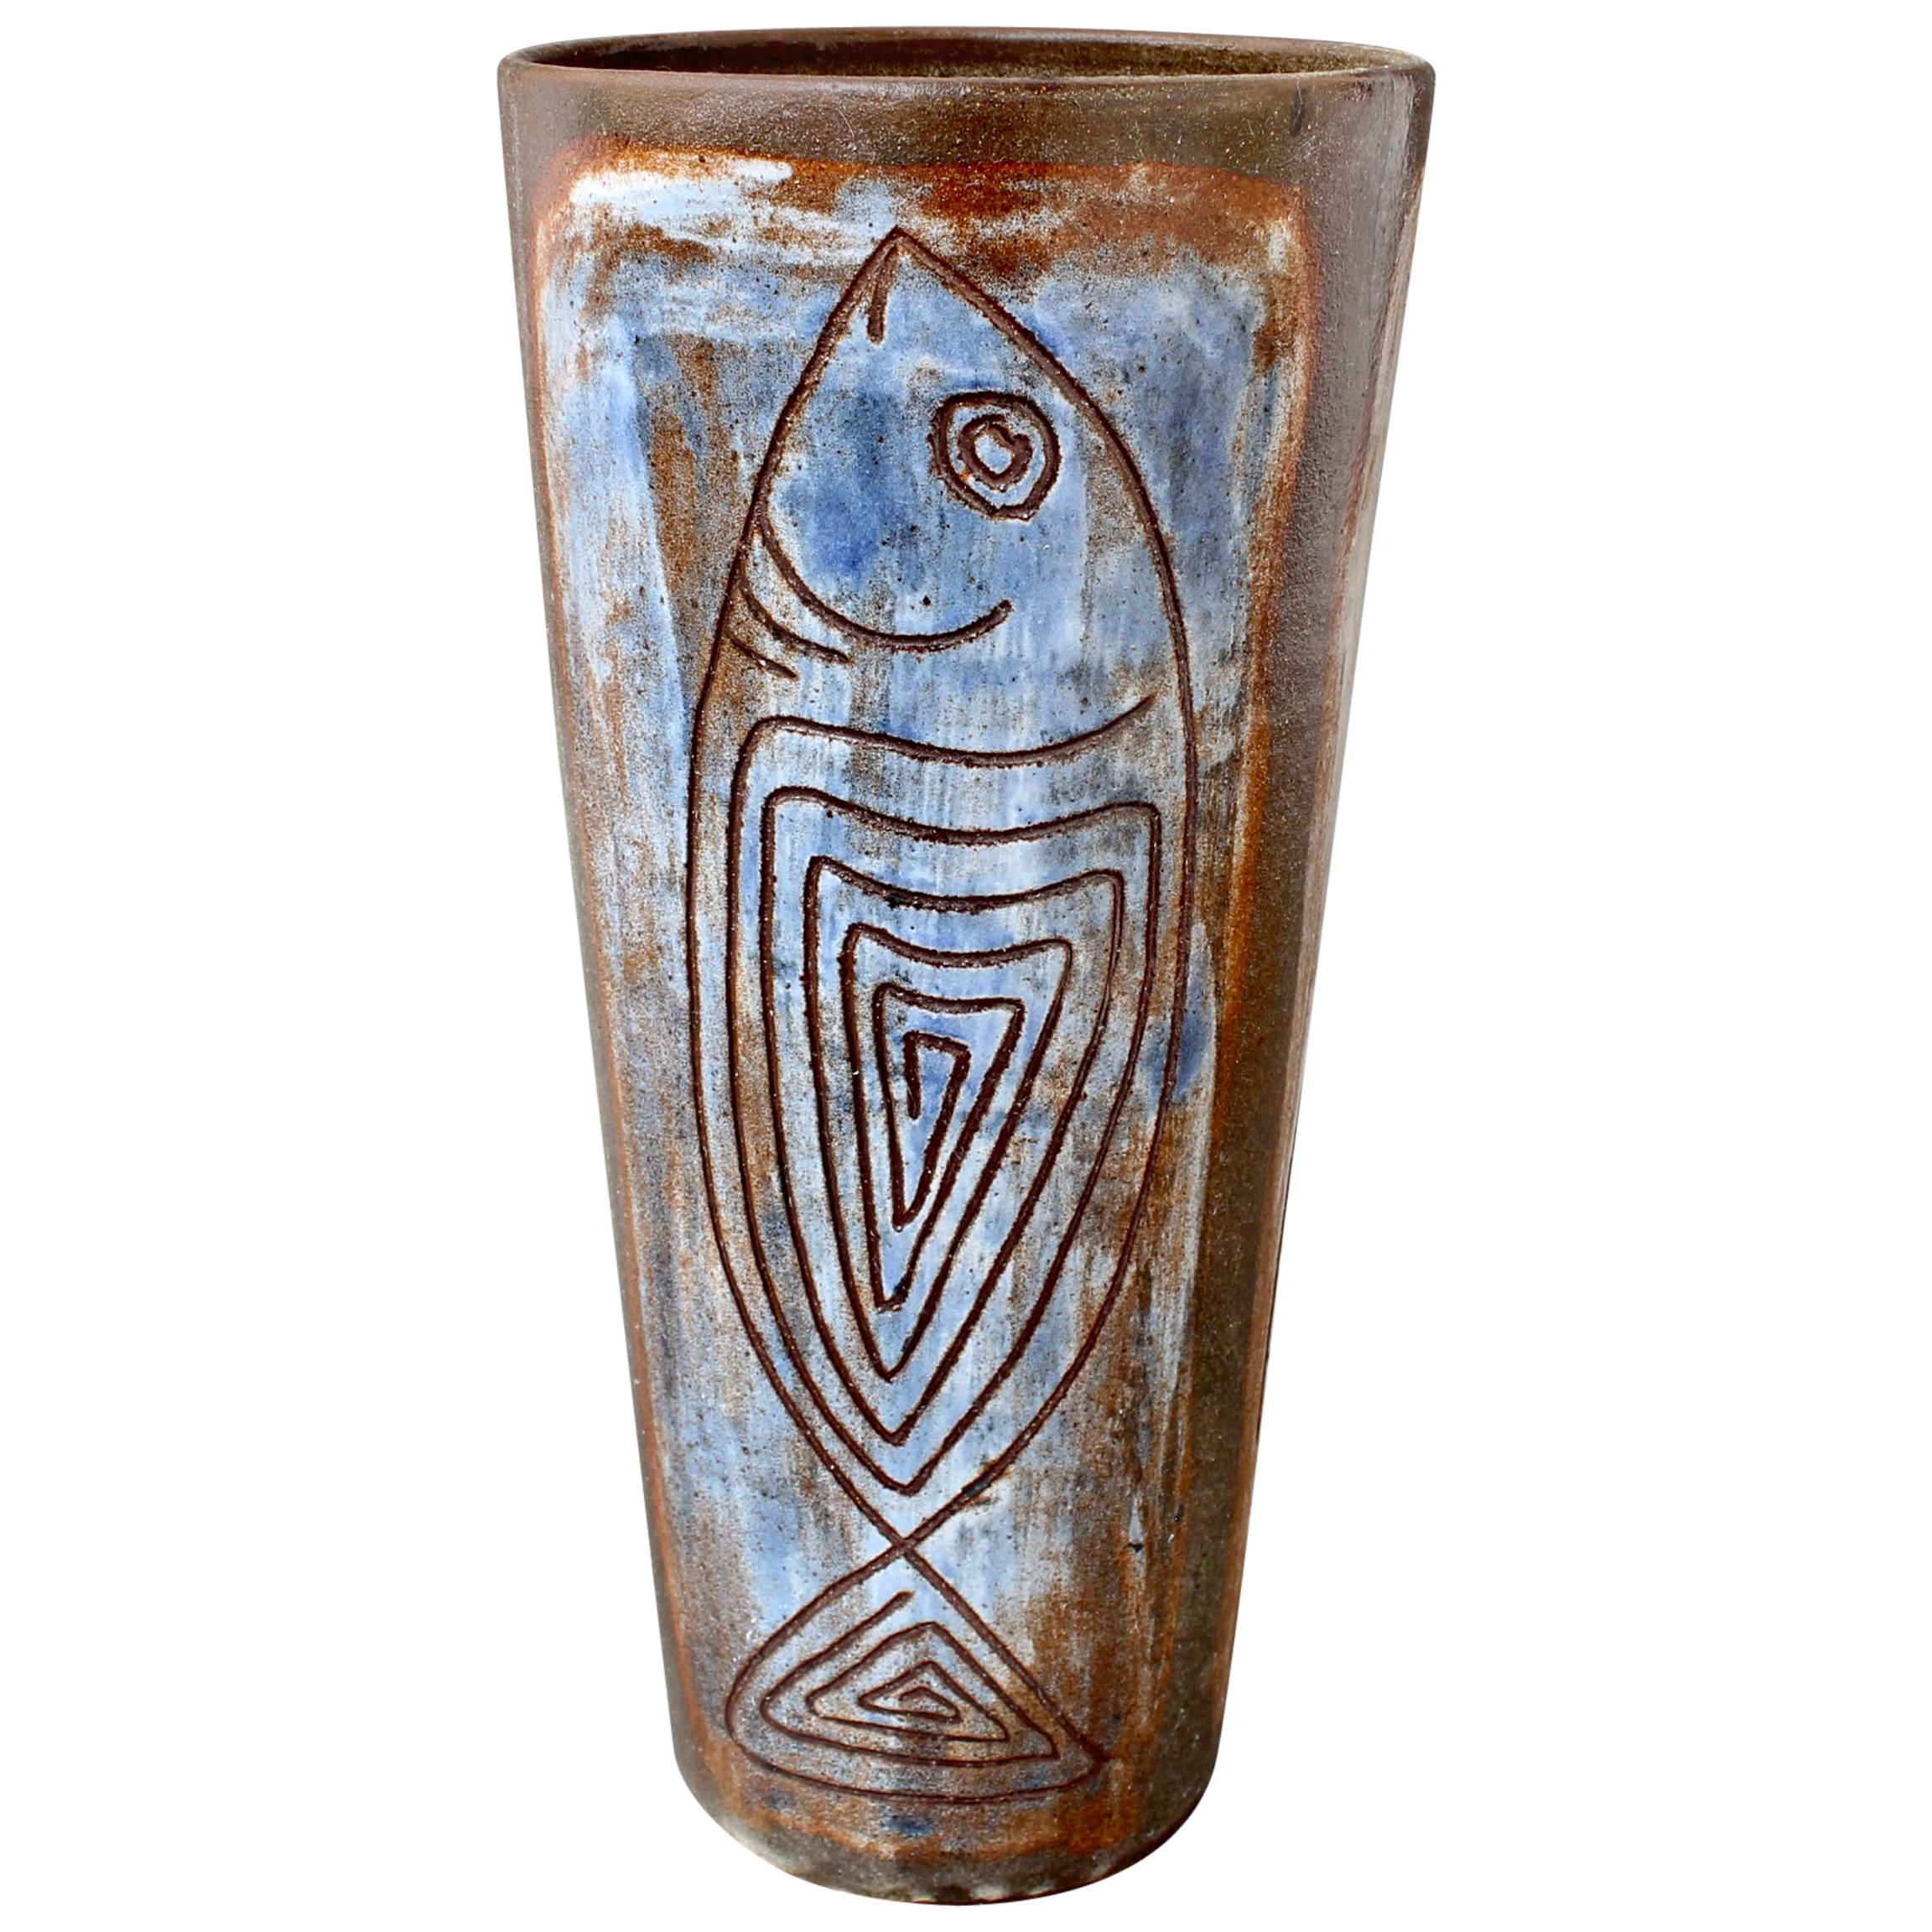 French Ceramic Decorative Vase by Alexandre Kostanda, circa 1960s